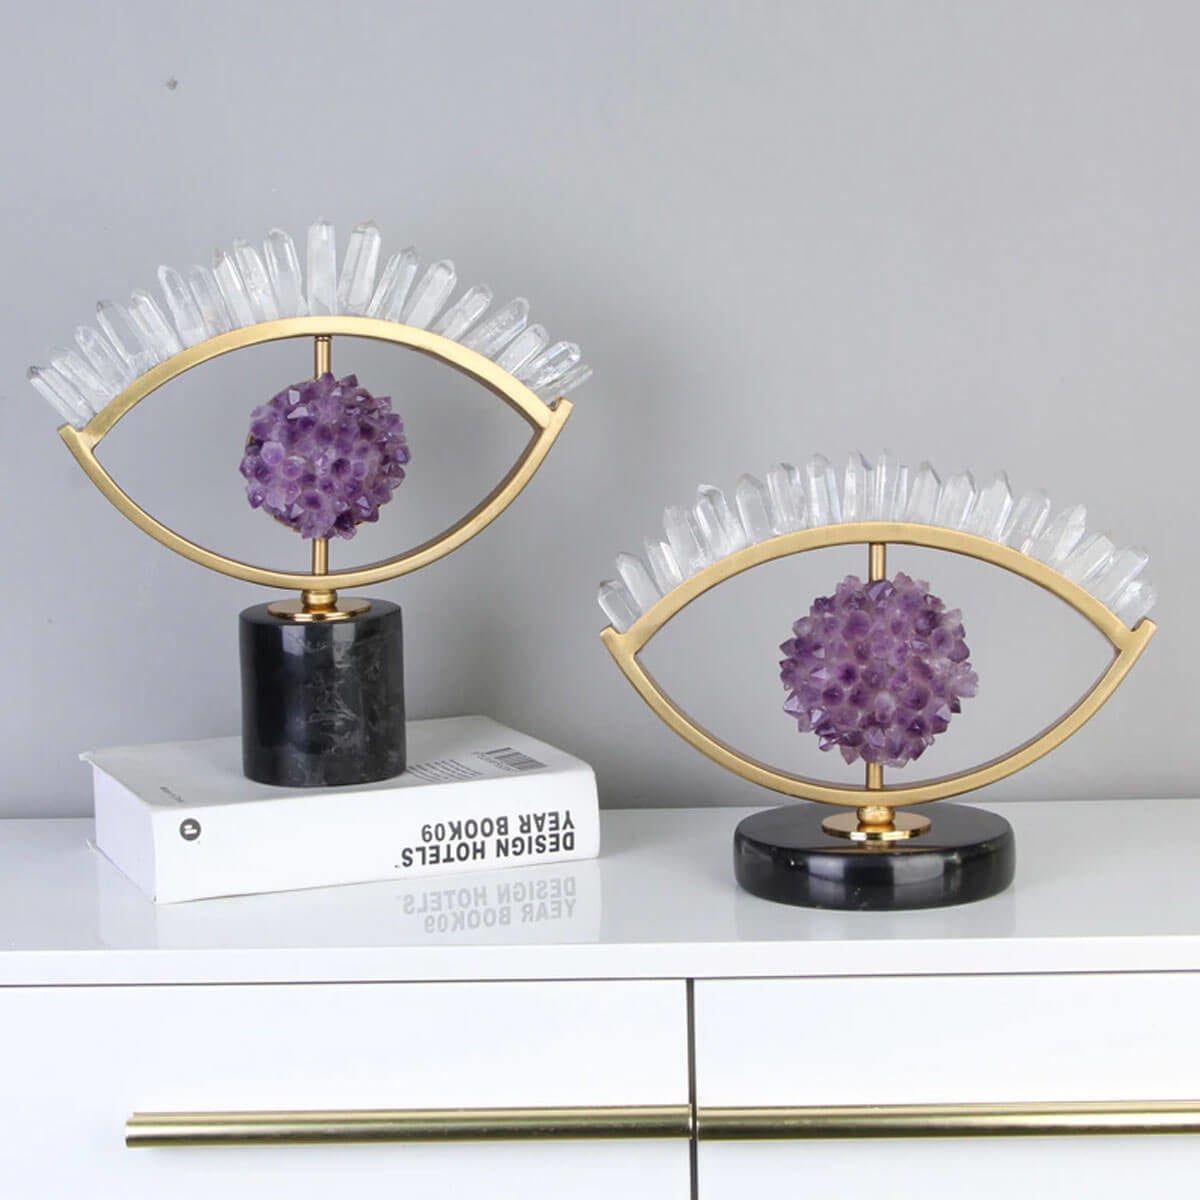 The Luxury Metal Crystal Purple Eye Sculpture